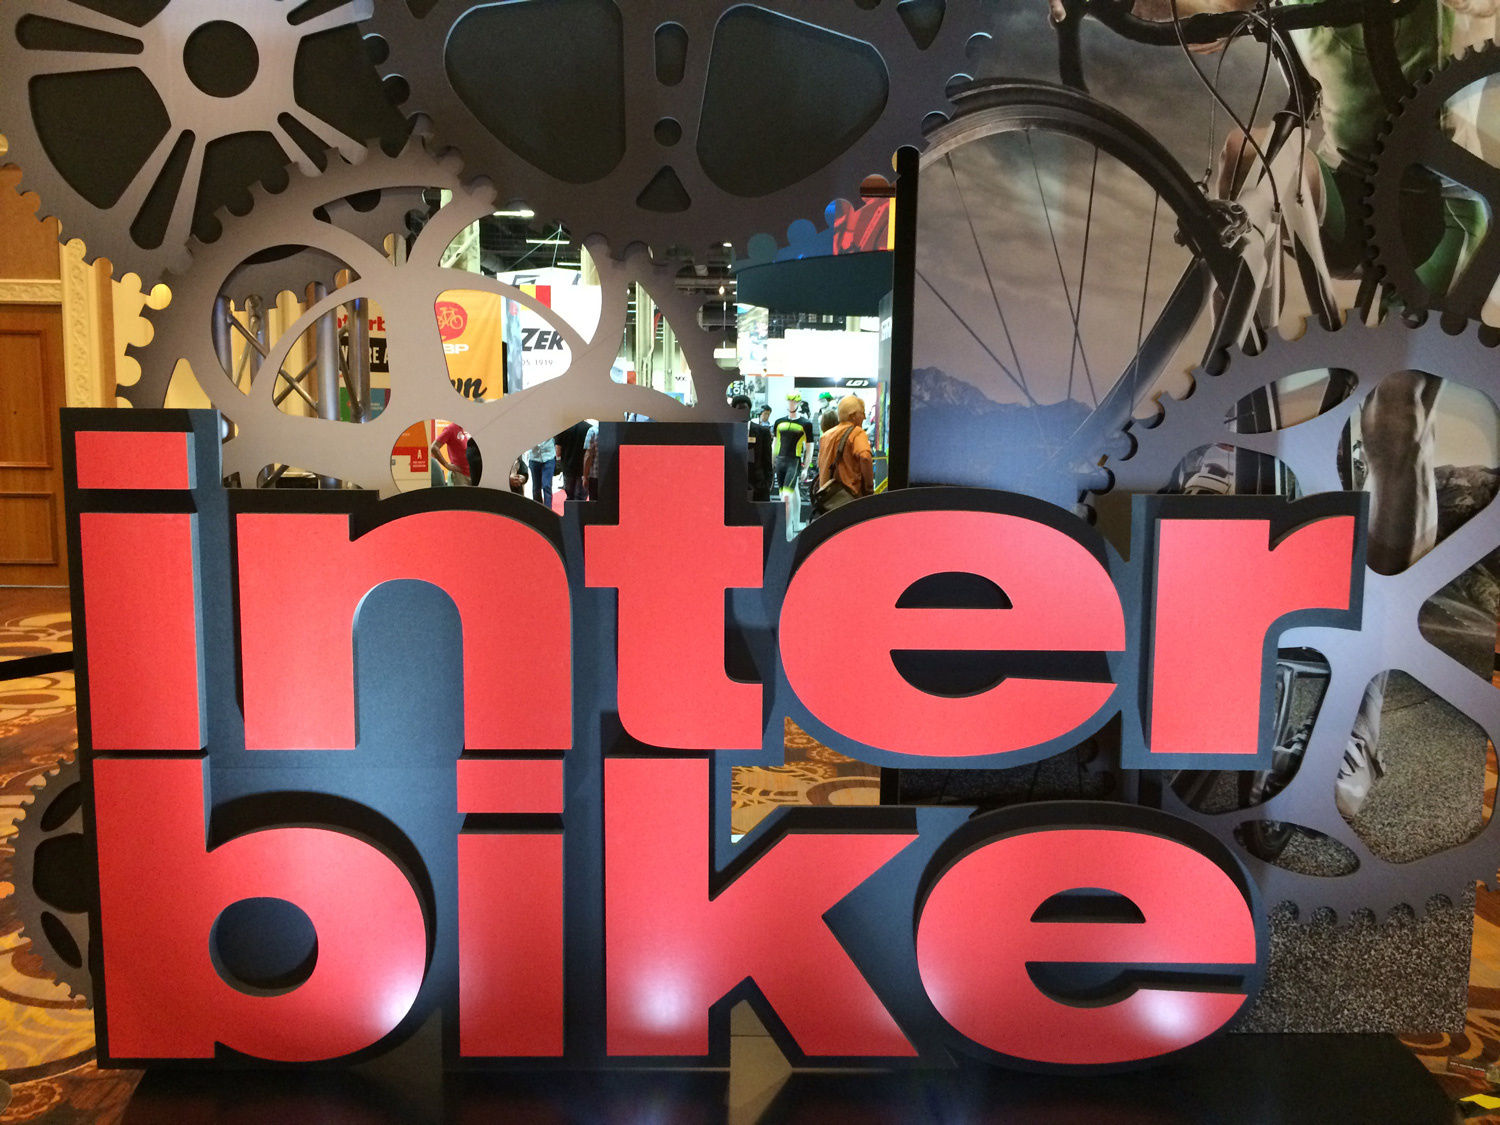 Interbike 2015 logo sign